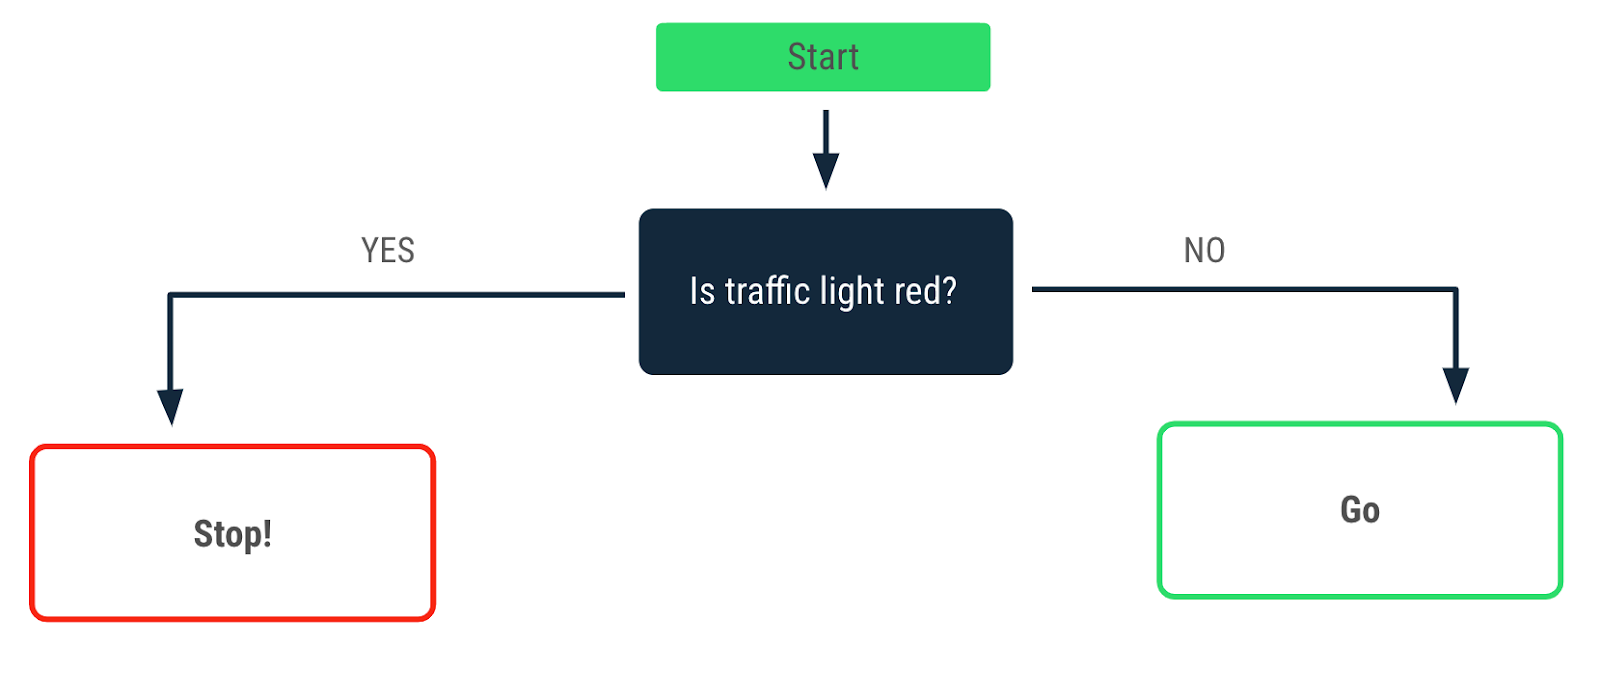 Diagram alir yang menjelaskan keputusan yang dibuat saat lampu lalu lintas menyala merah. Tanda panah ya mengarah ke pesan "Berhenti!". Tanda panah tidak mengarah ke pesan "Mulai Melaju".